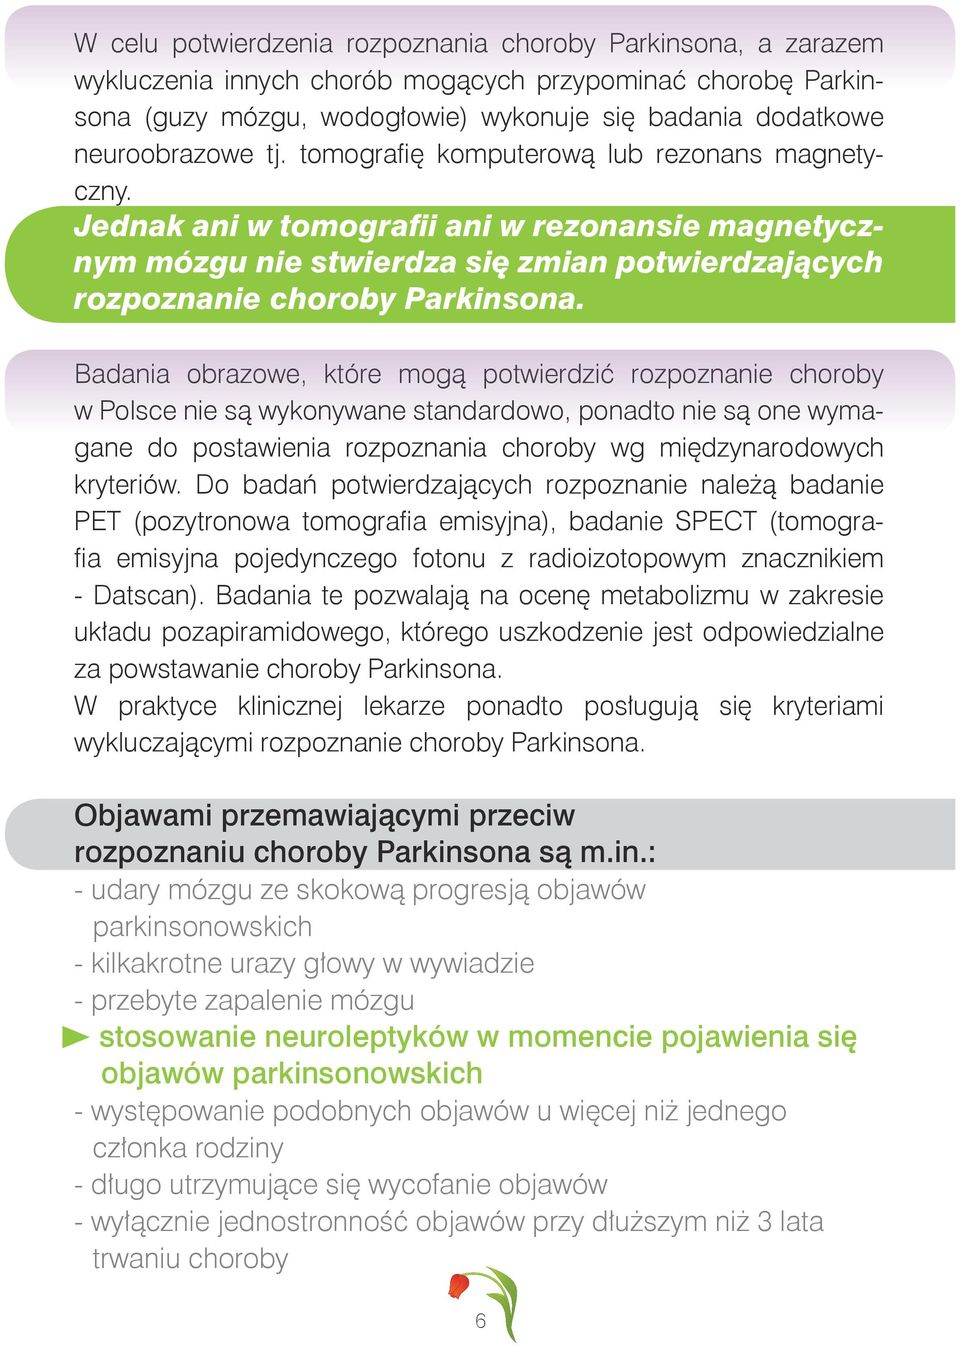 Badania obrazowe, które mogą potwierdzić rozpoznanie choroby w Polsce nie są wykonywane standardowo, ponadto nie są one wymagane do postawienia rozpoznania choroby wg międzynarodowych kryteriów.